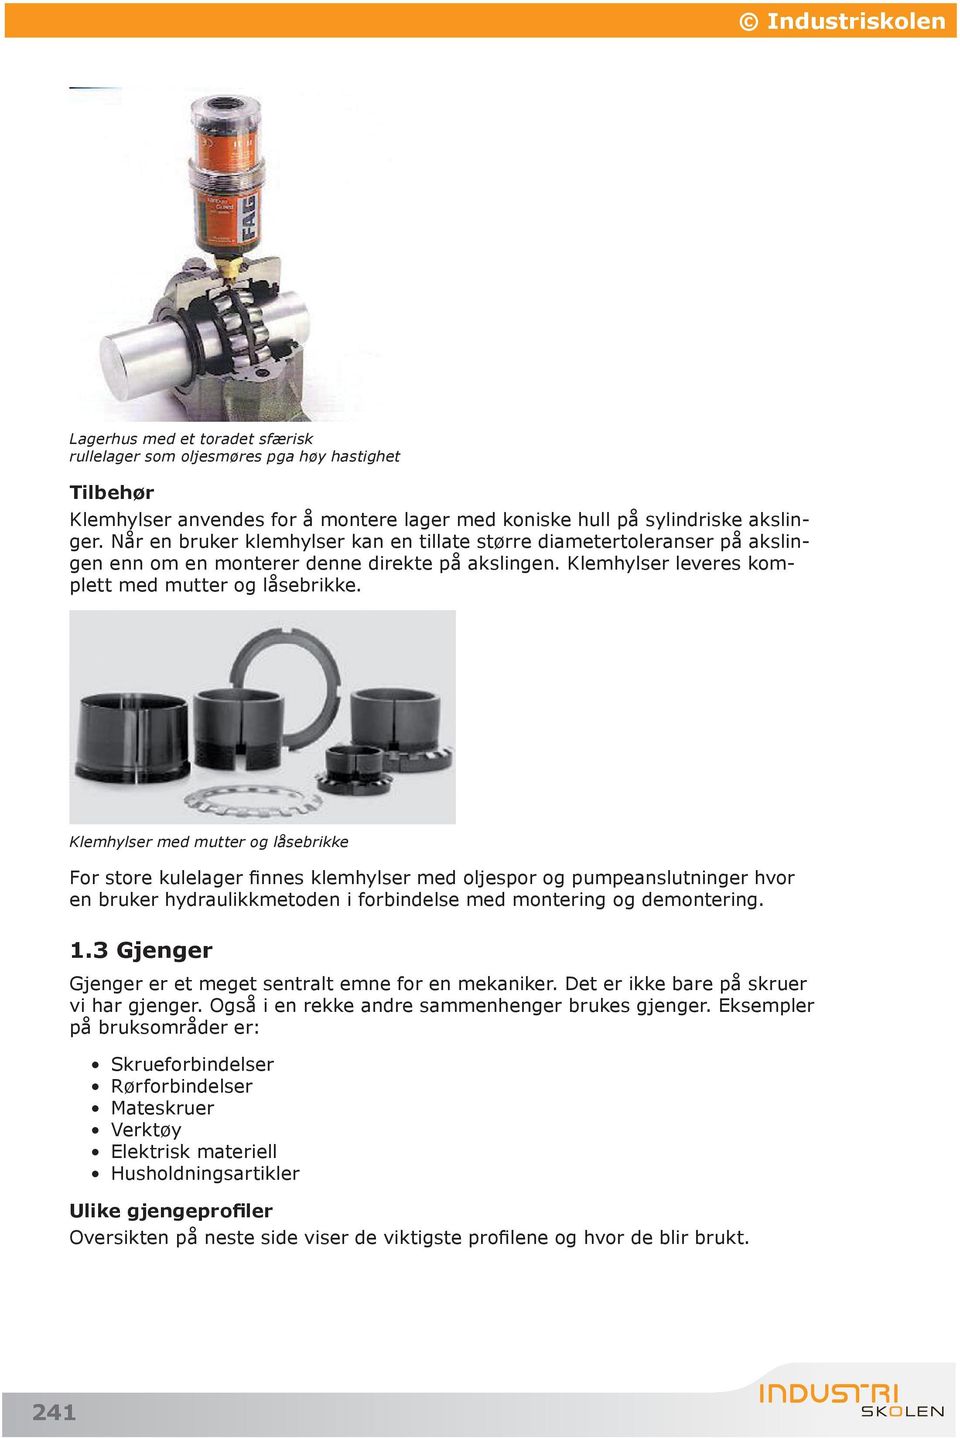 Maskinelementer og reparasjon. VG2 Industriteknologi - PDF Free Download